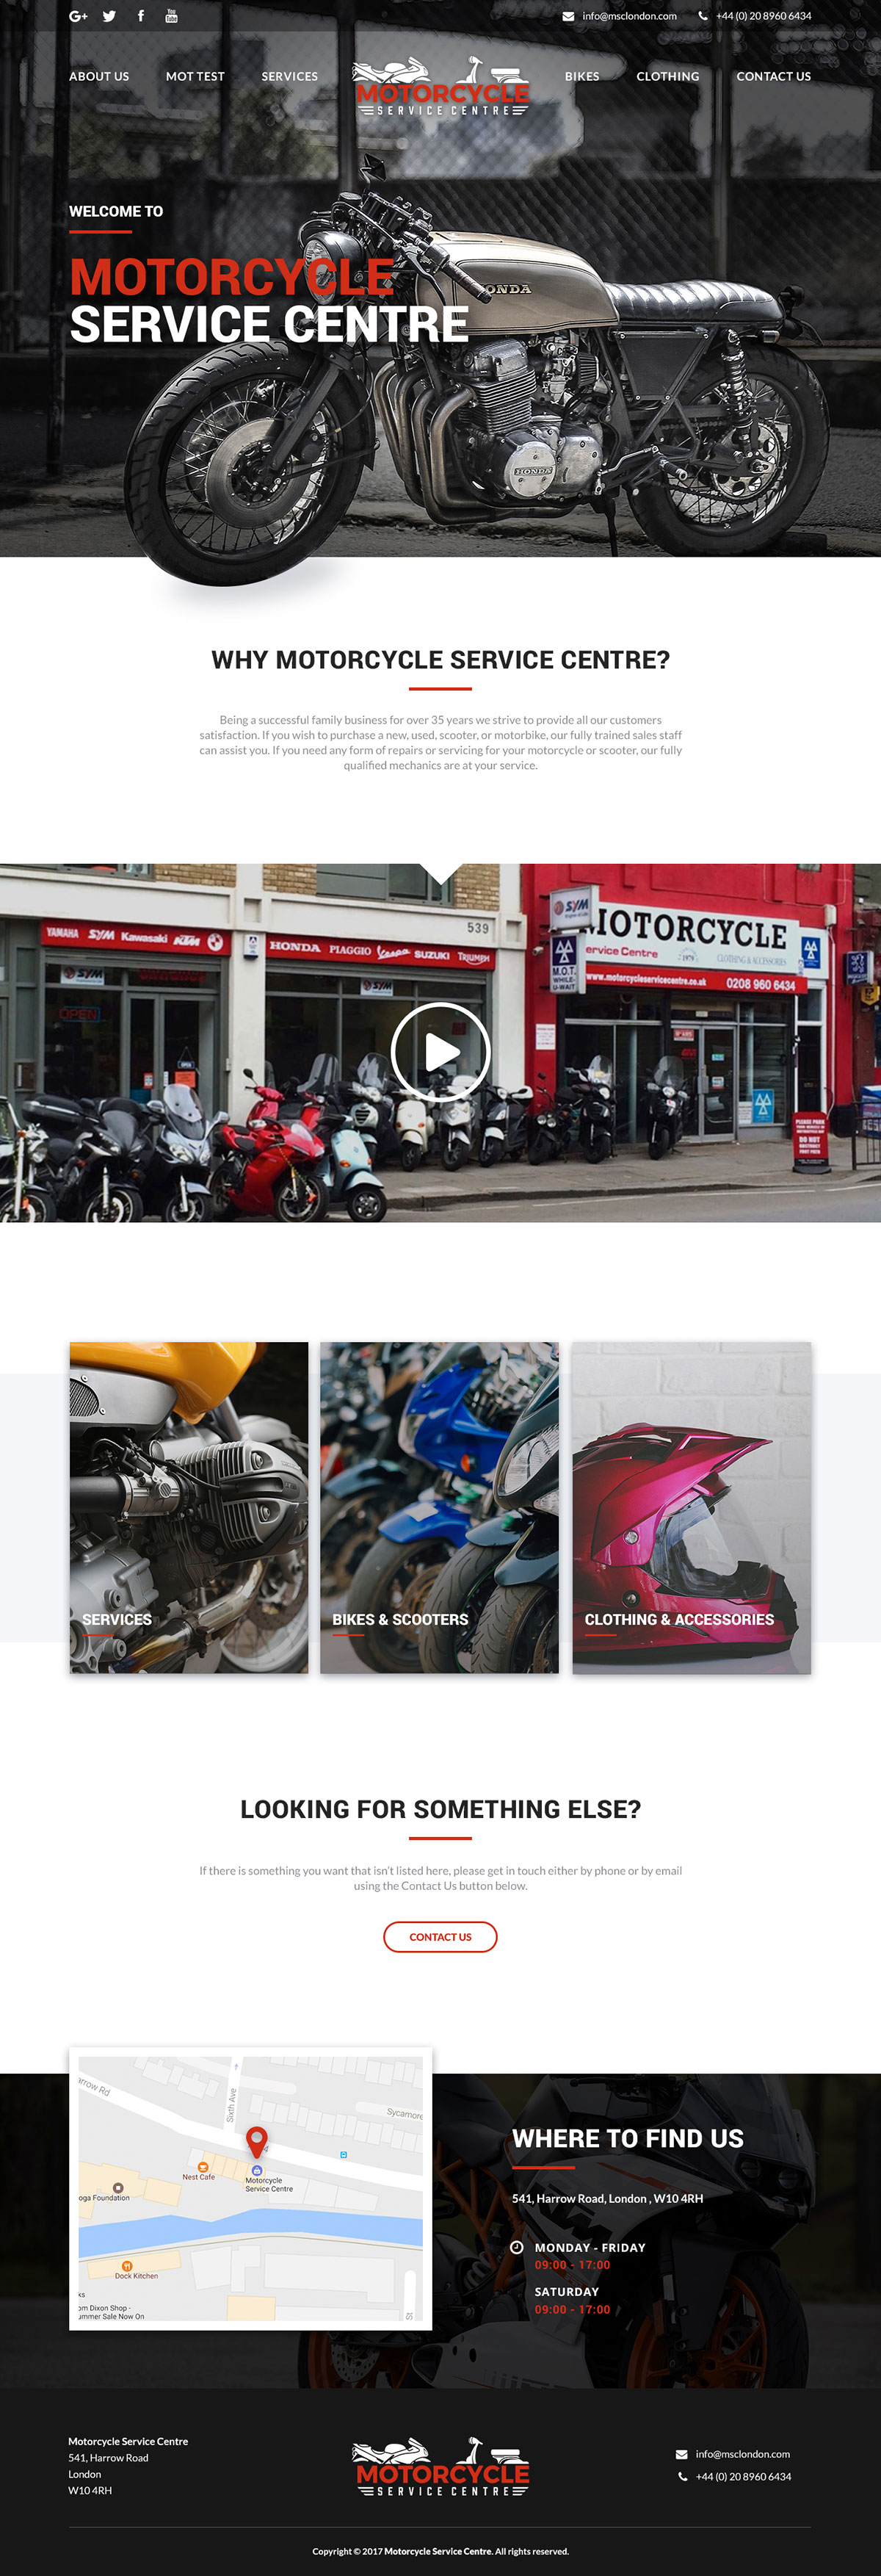 12款摩托车品牌官方网页设计